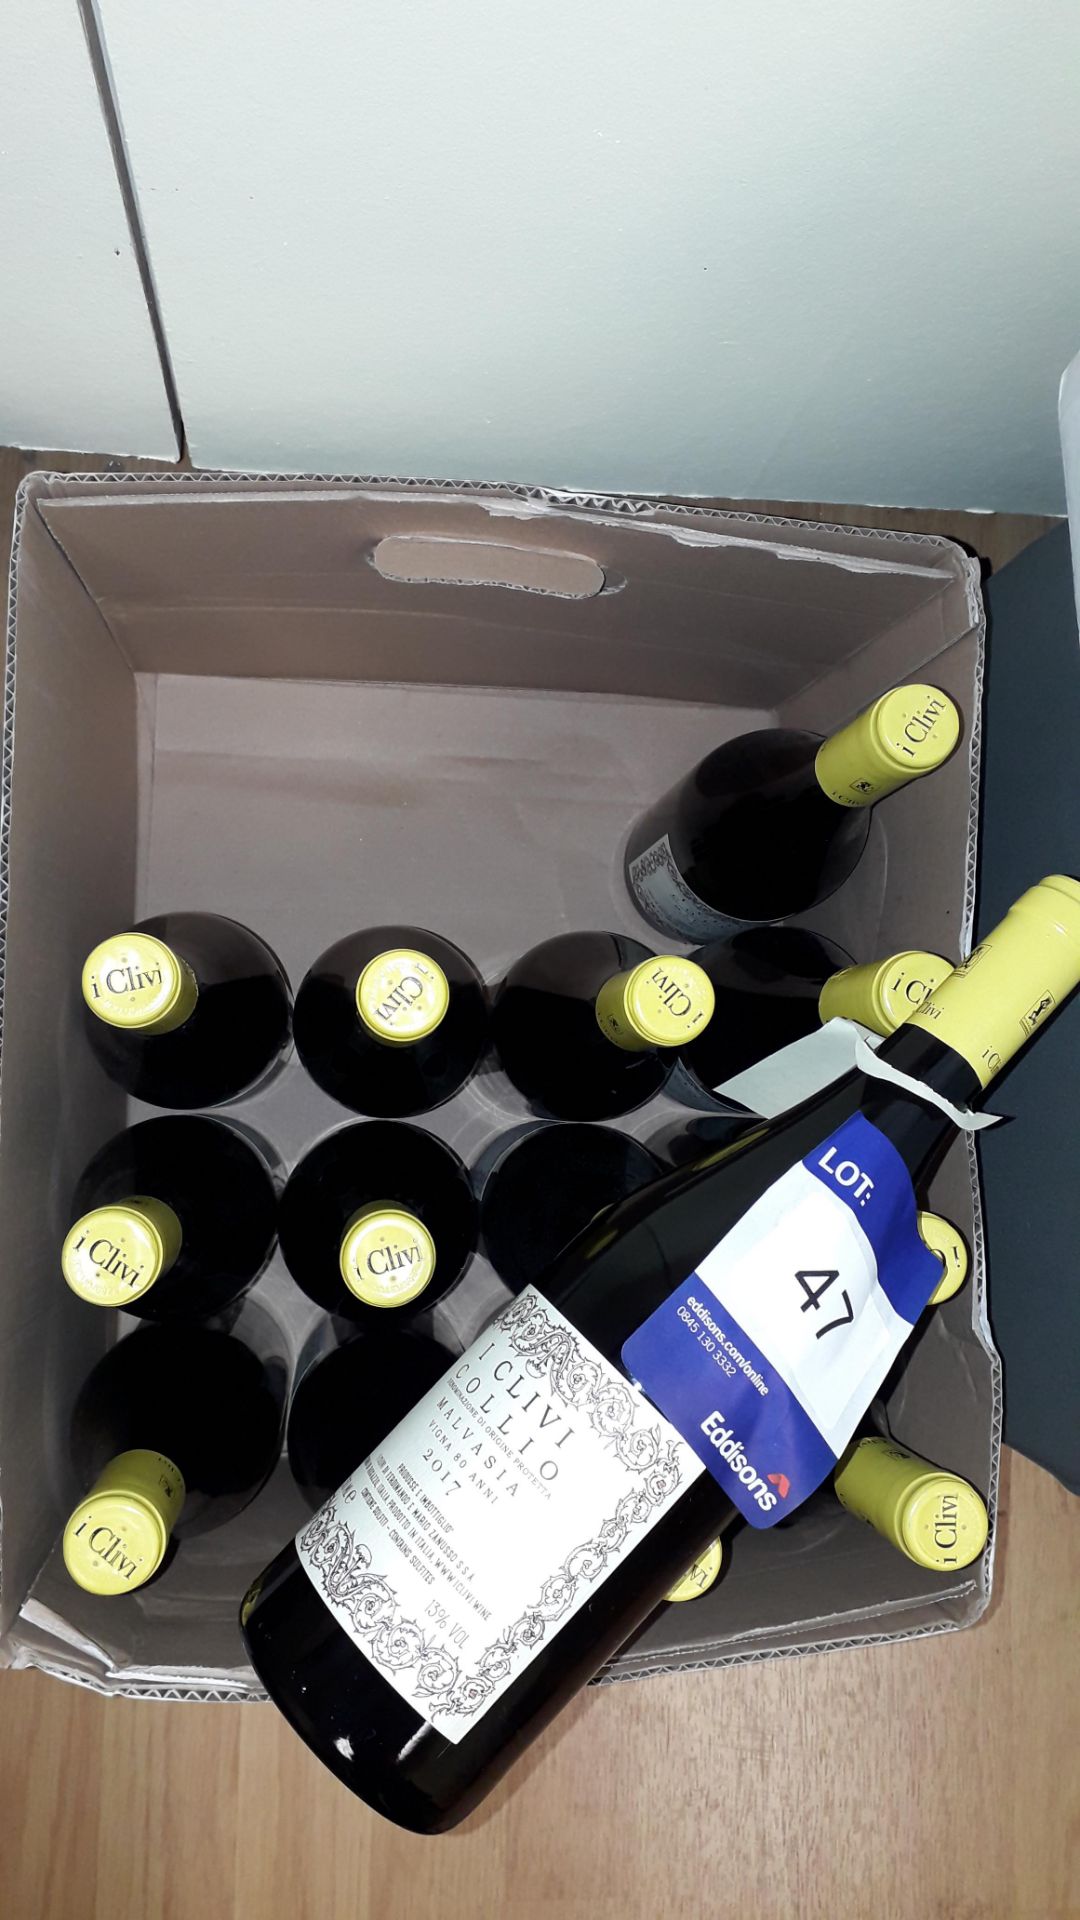 14 x 75cl bottles I Clivi Malvasia Collio 2017